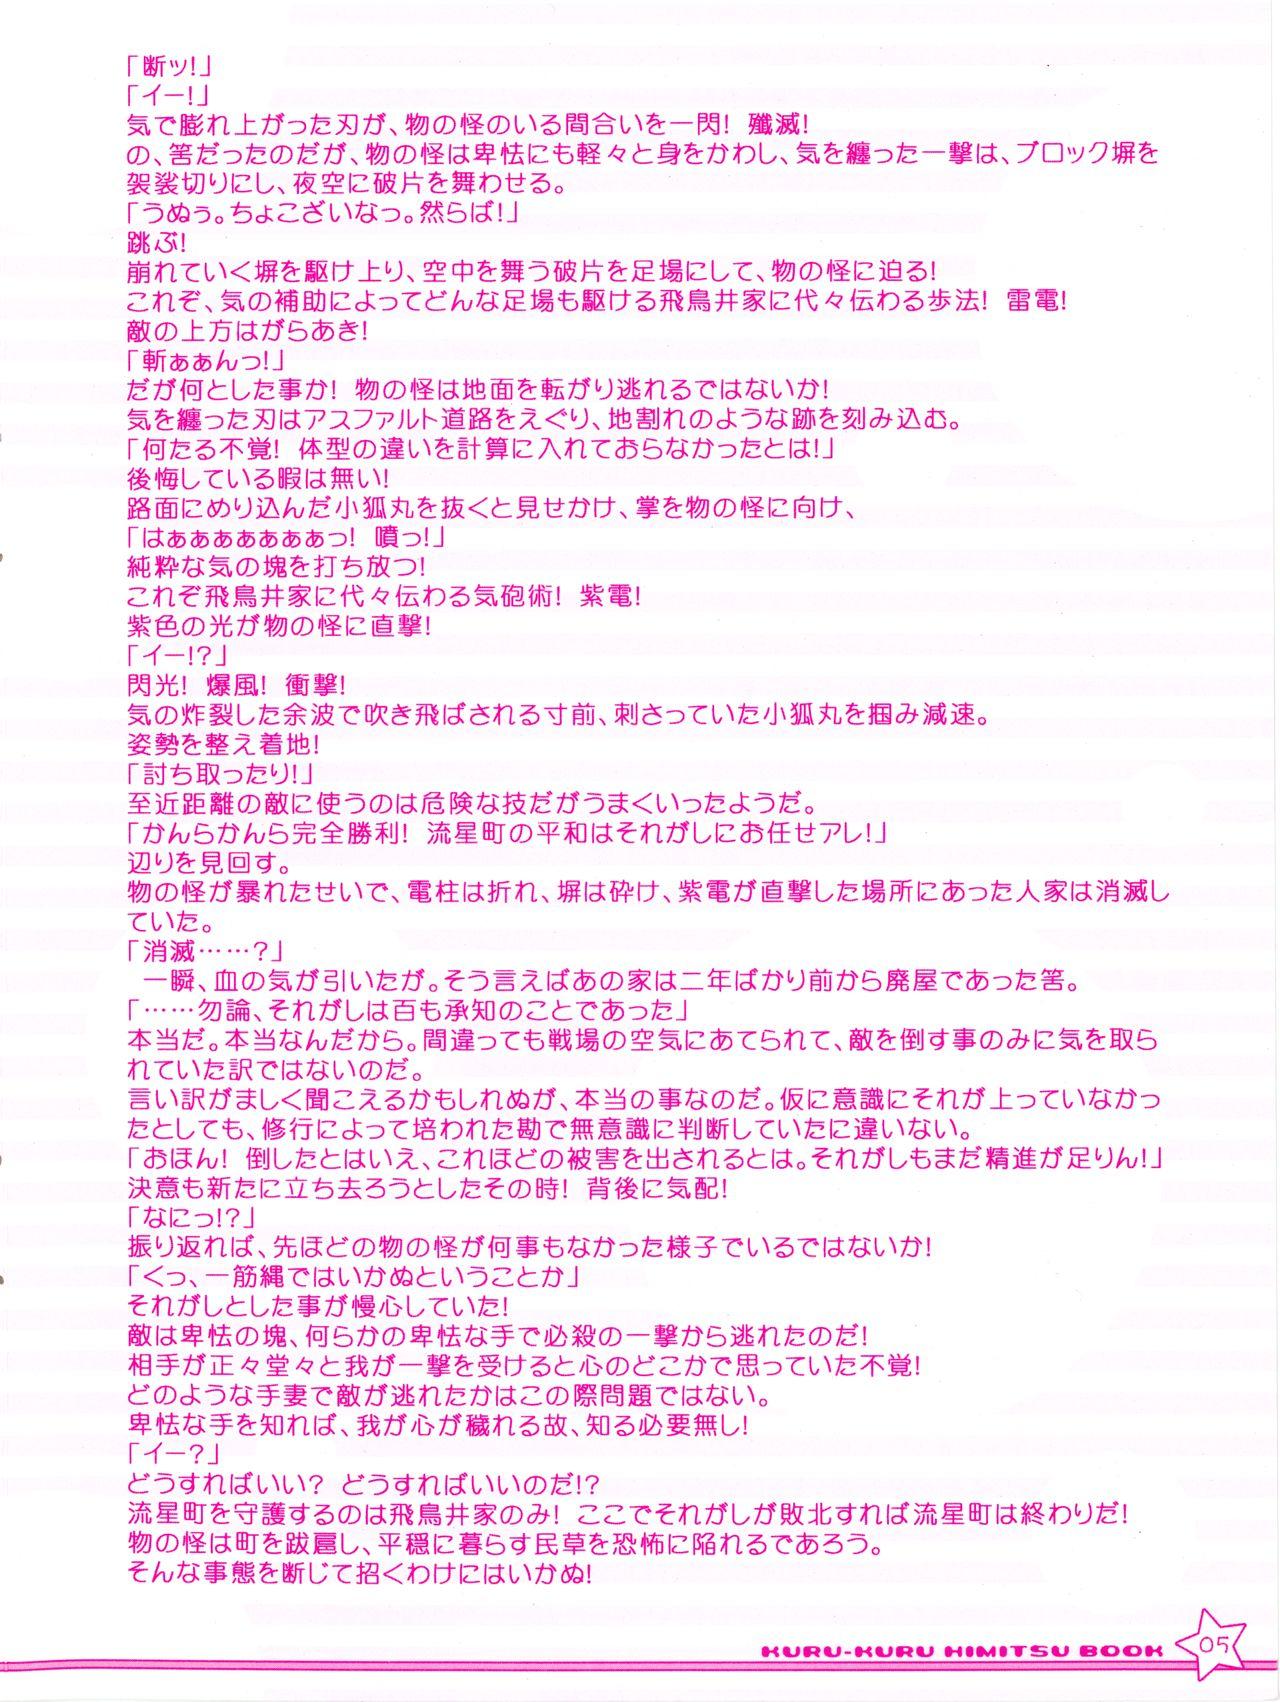 Omegle Twinkle☆Crusaders Kurukuru Most Secret Booklet - Twinkle crusaders Sperm - Page 5